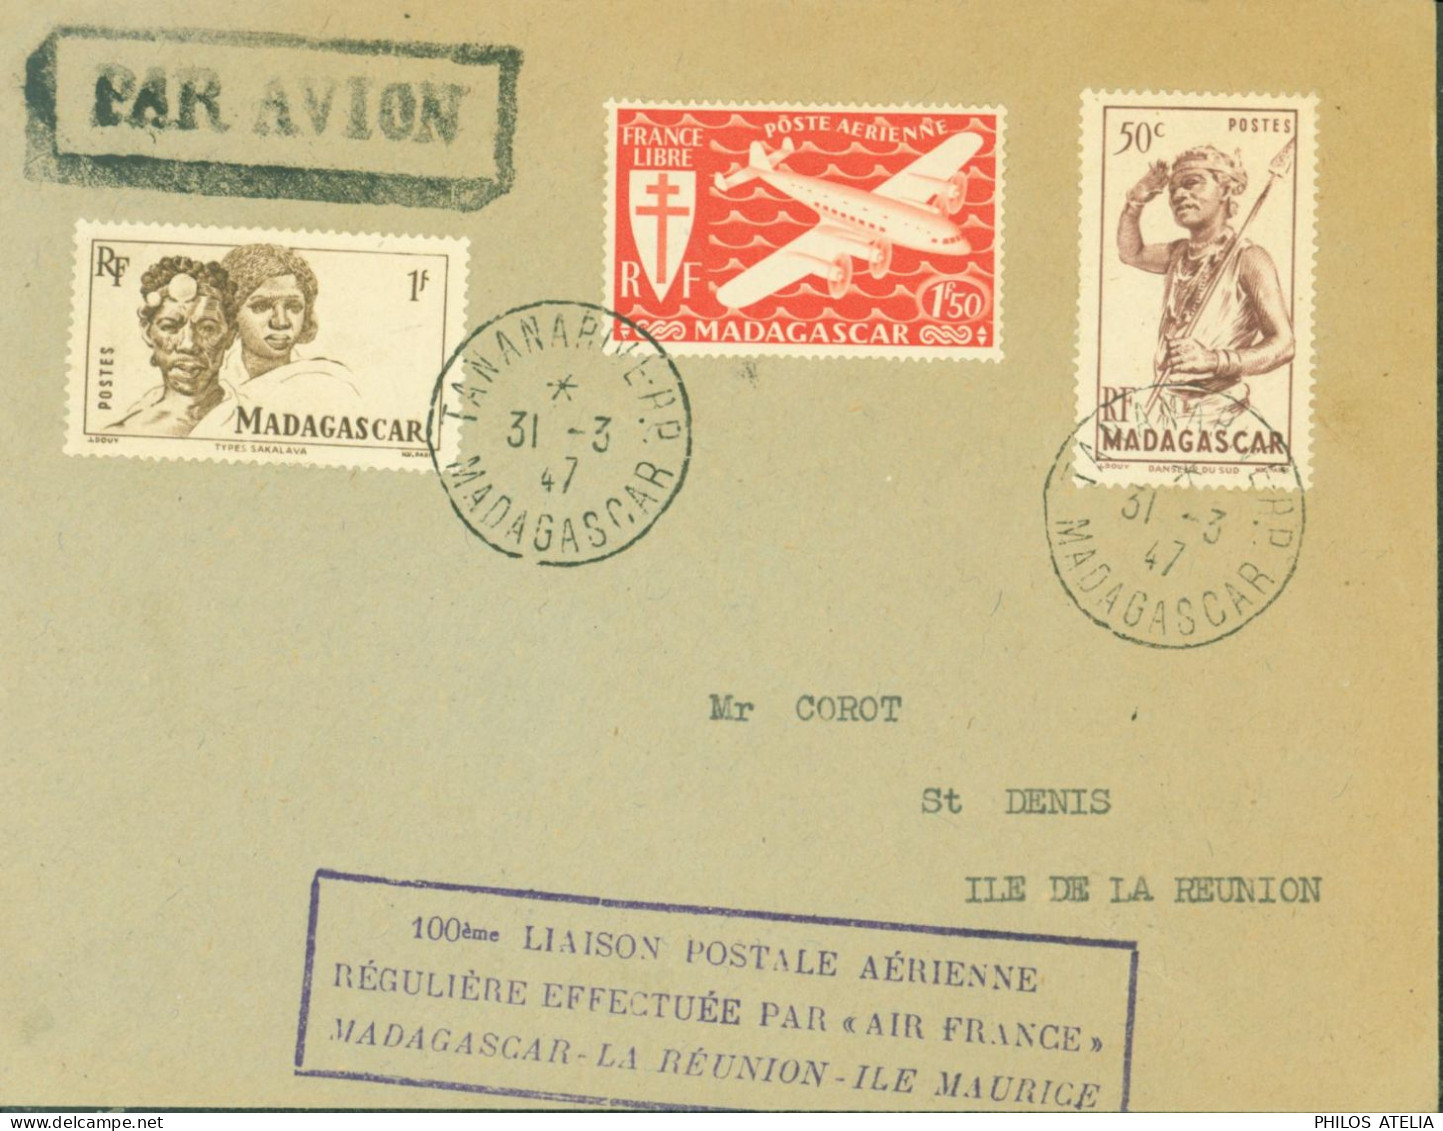 100 Liaison Postale Aérienne Régulière Effectuée Par Air France Madagascar La Réunion Ile Maurice CAD Tananarive 31 3 47 - Airmail